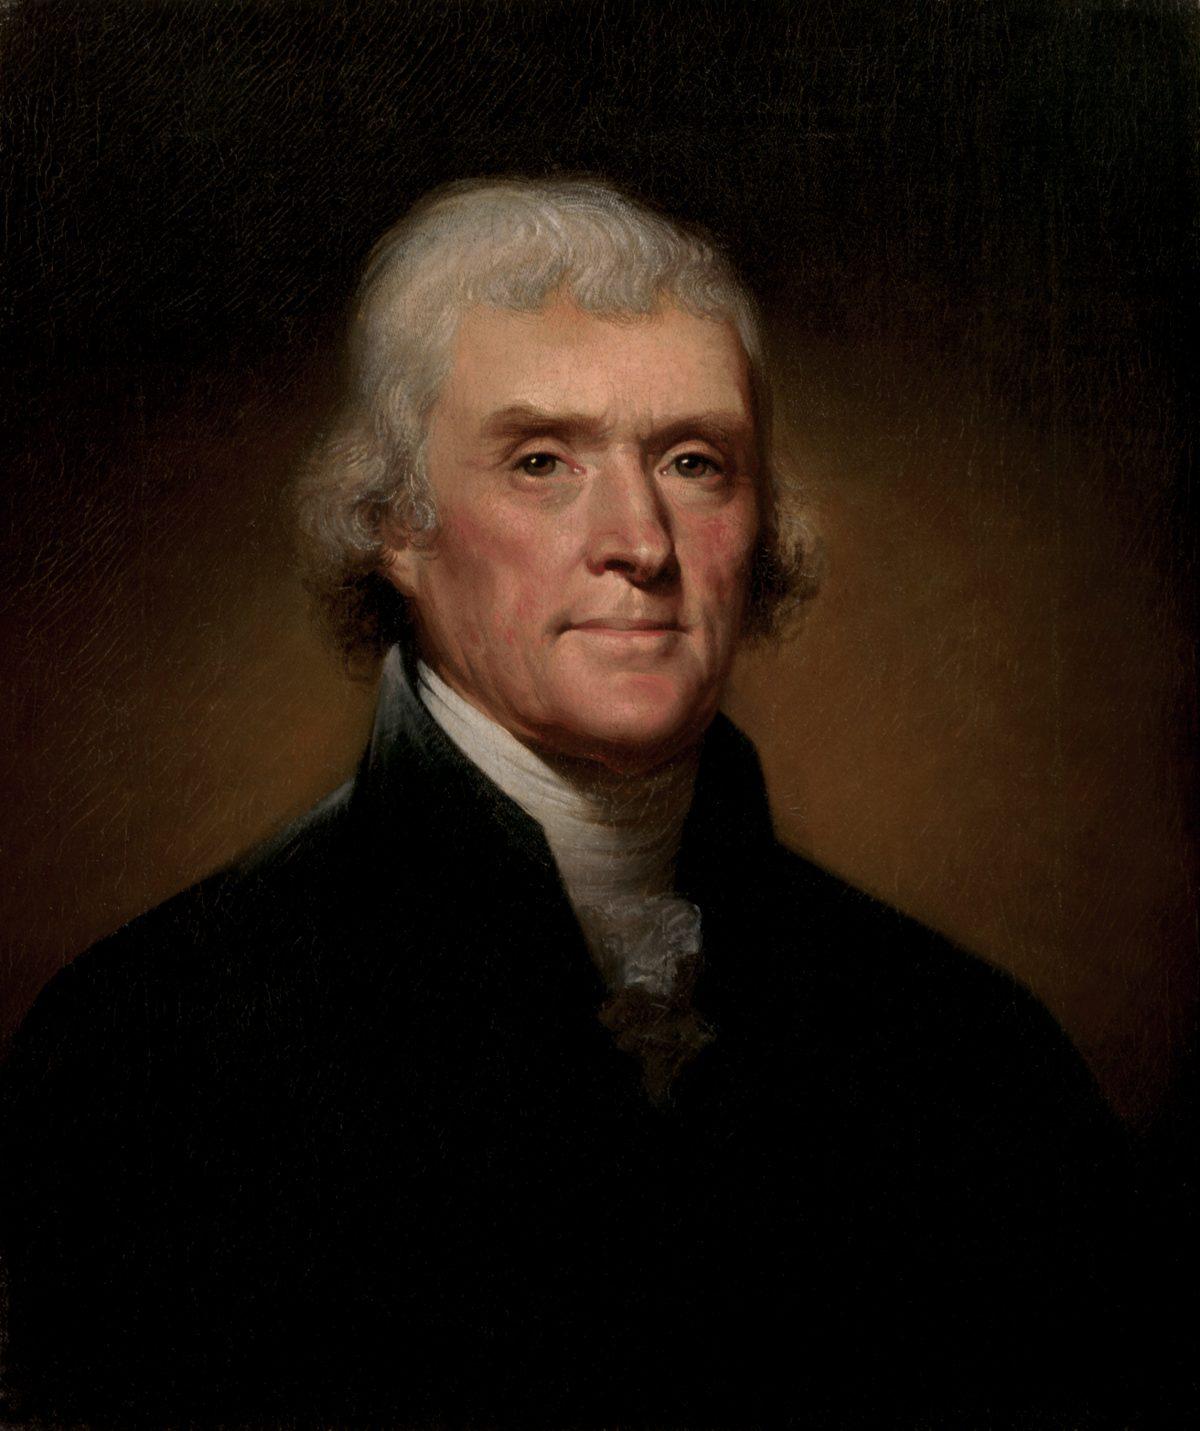 Portrait of Thomas Jefferson by Rembrandt Peale, 1800. (Public domain)